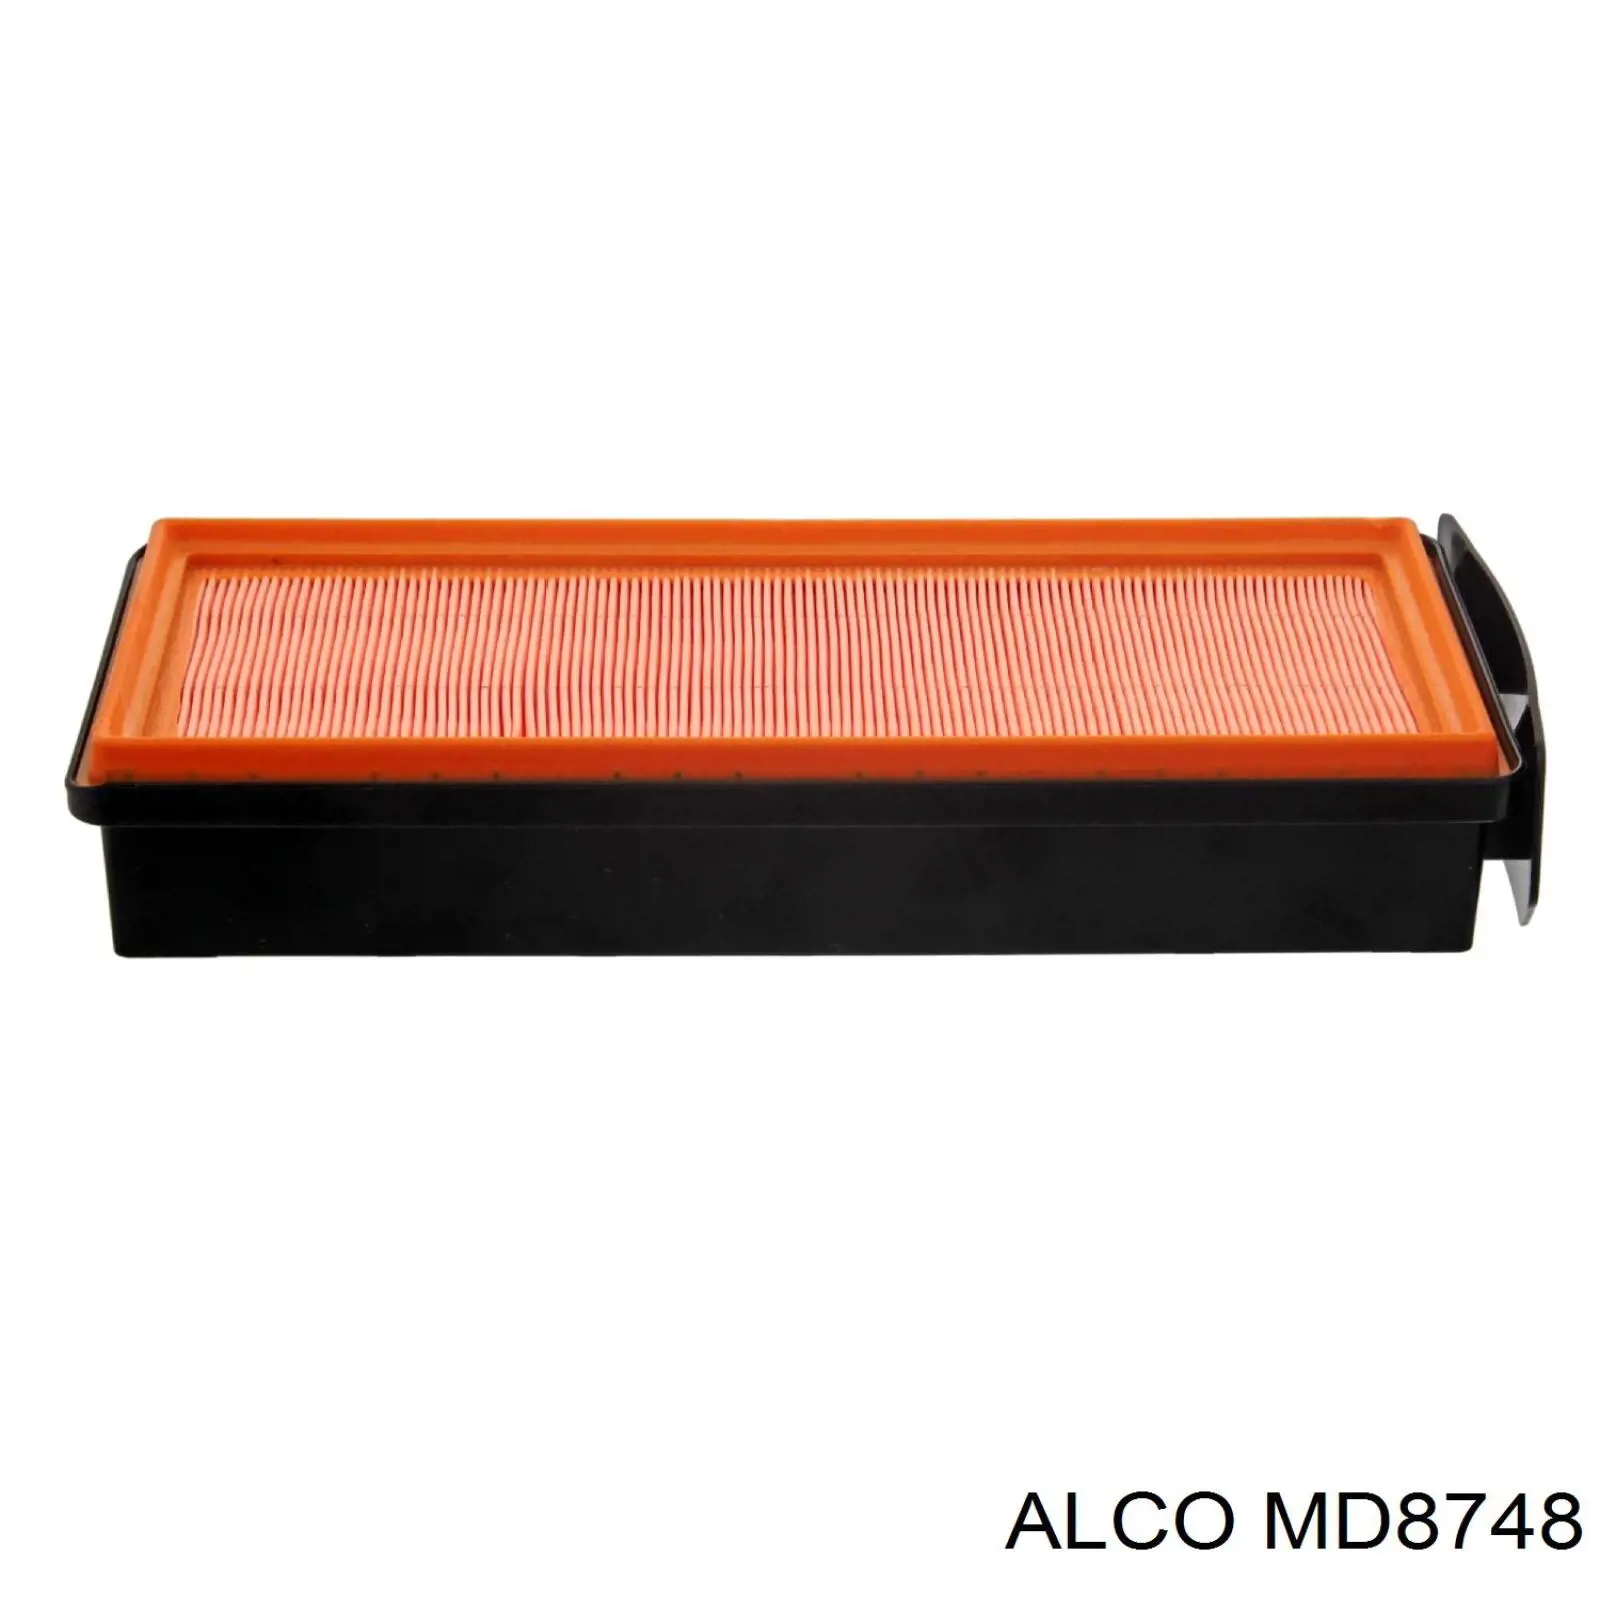 MD8748 Alco filtro de aire